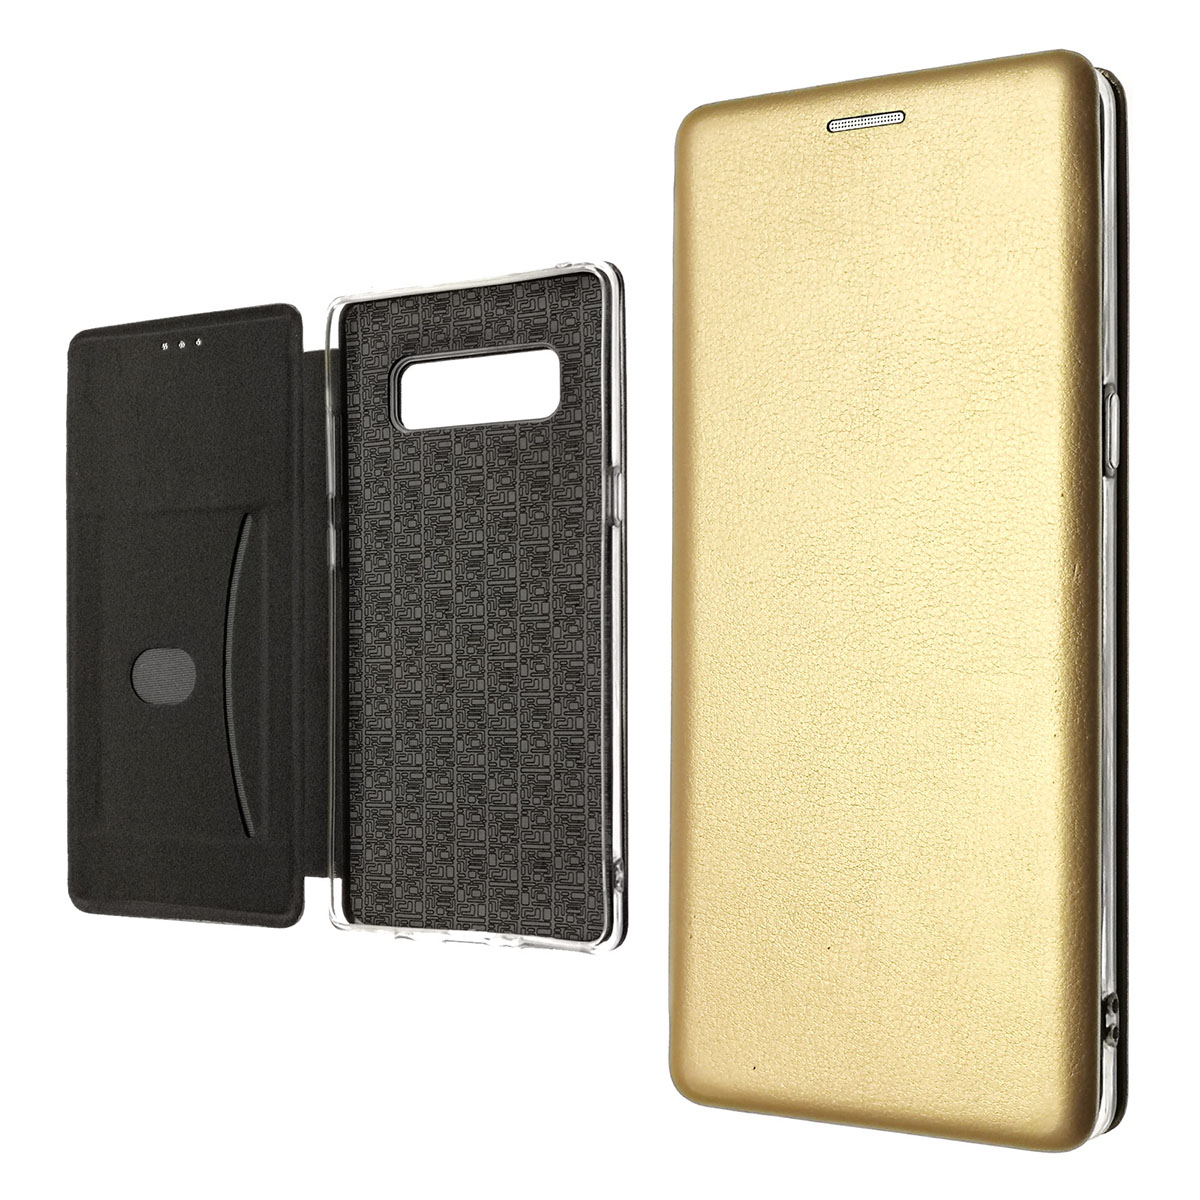 Чехол книжка для SAMSUNG Galaxy Note 8, экокожа, визитница, цвет золотистый.